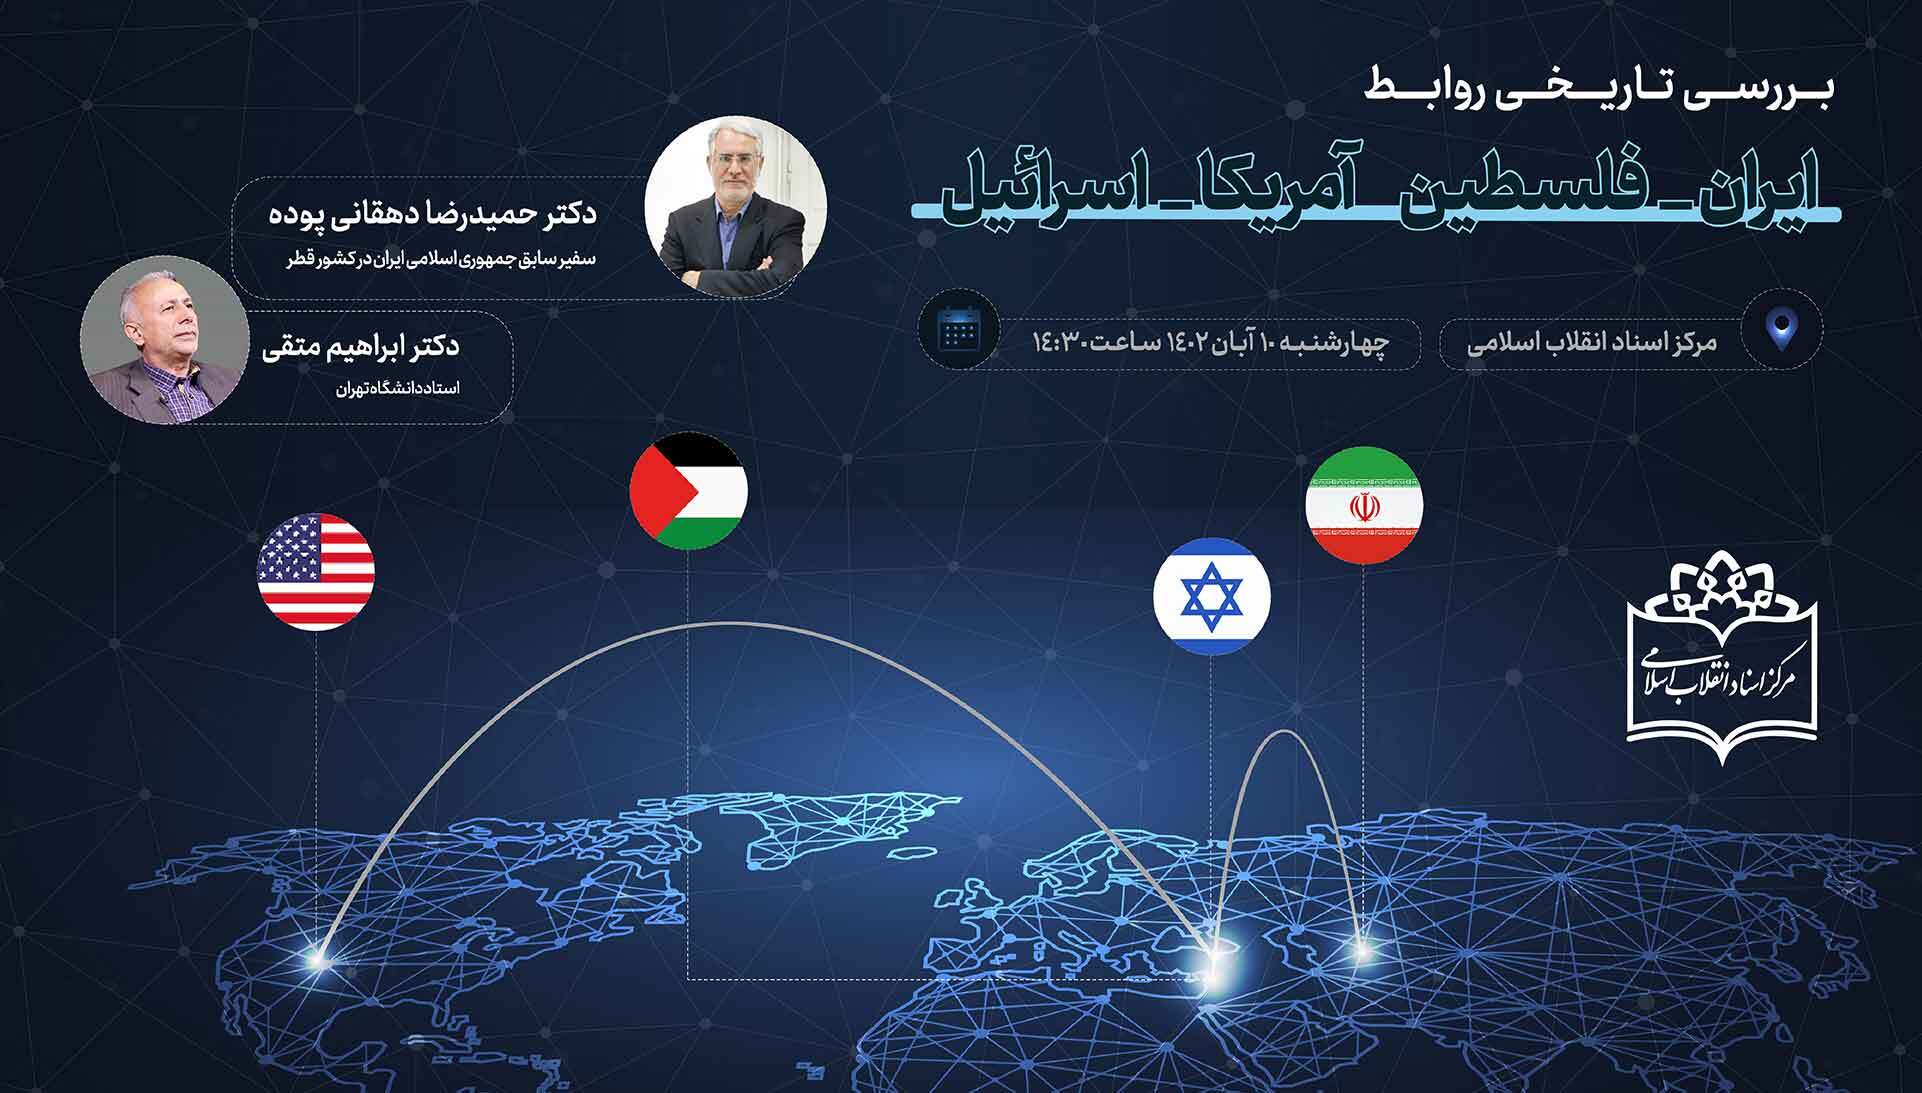 نشست بررسی تاریخی روابط ایران-فلسطین و امریکا-اسرائیل برگزار خواهد شد